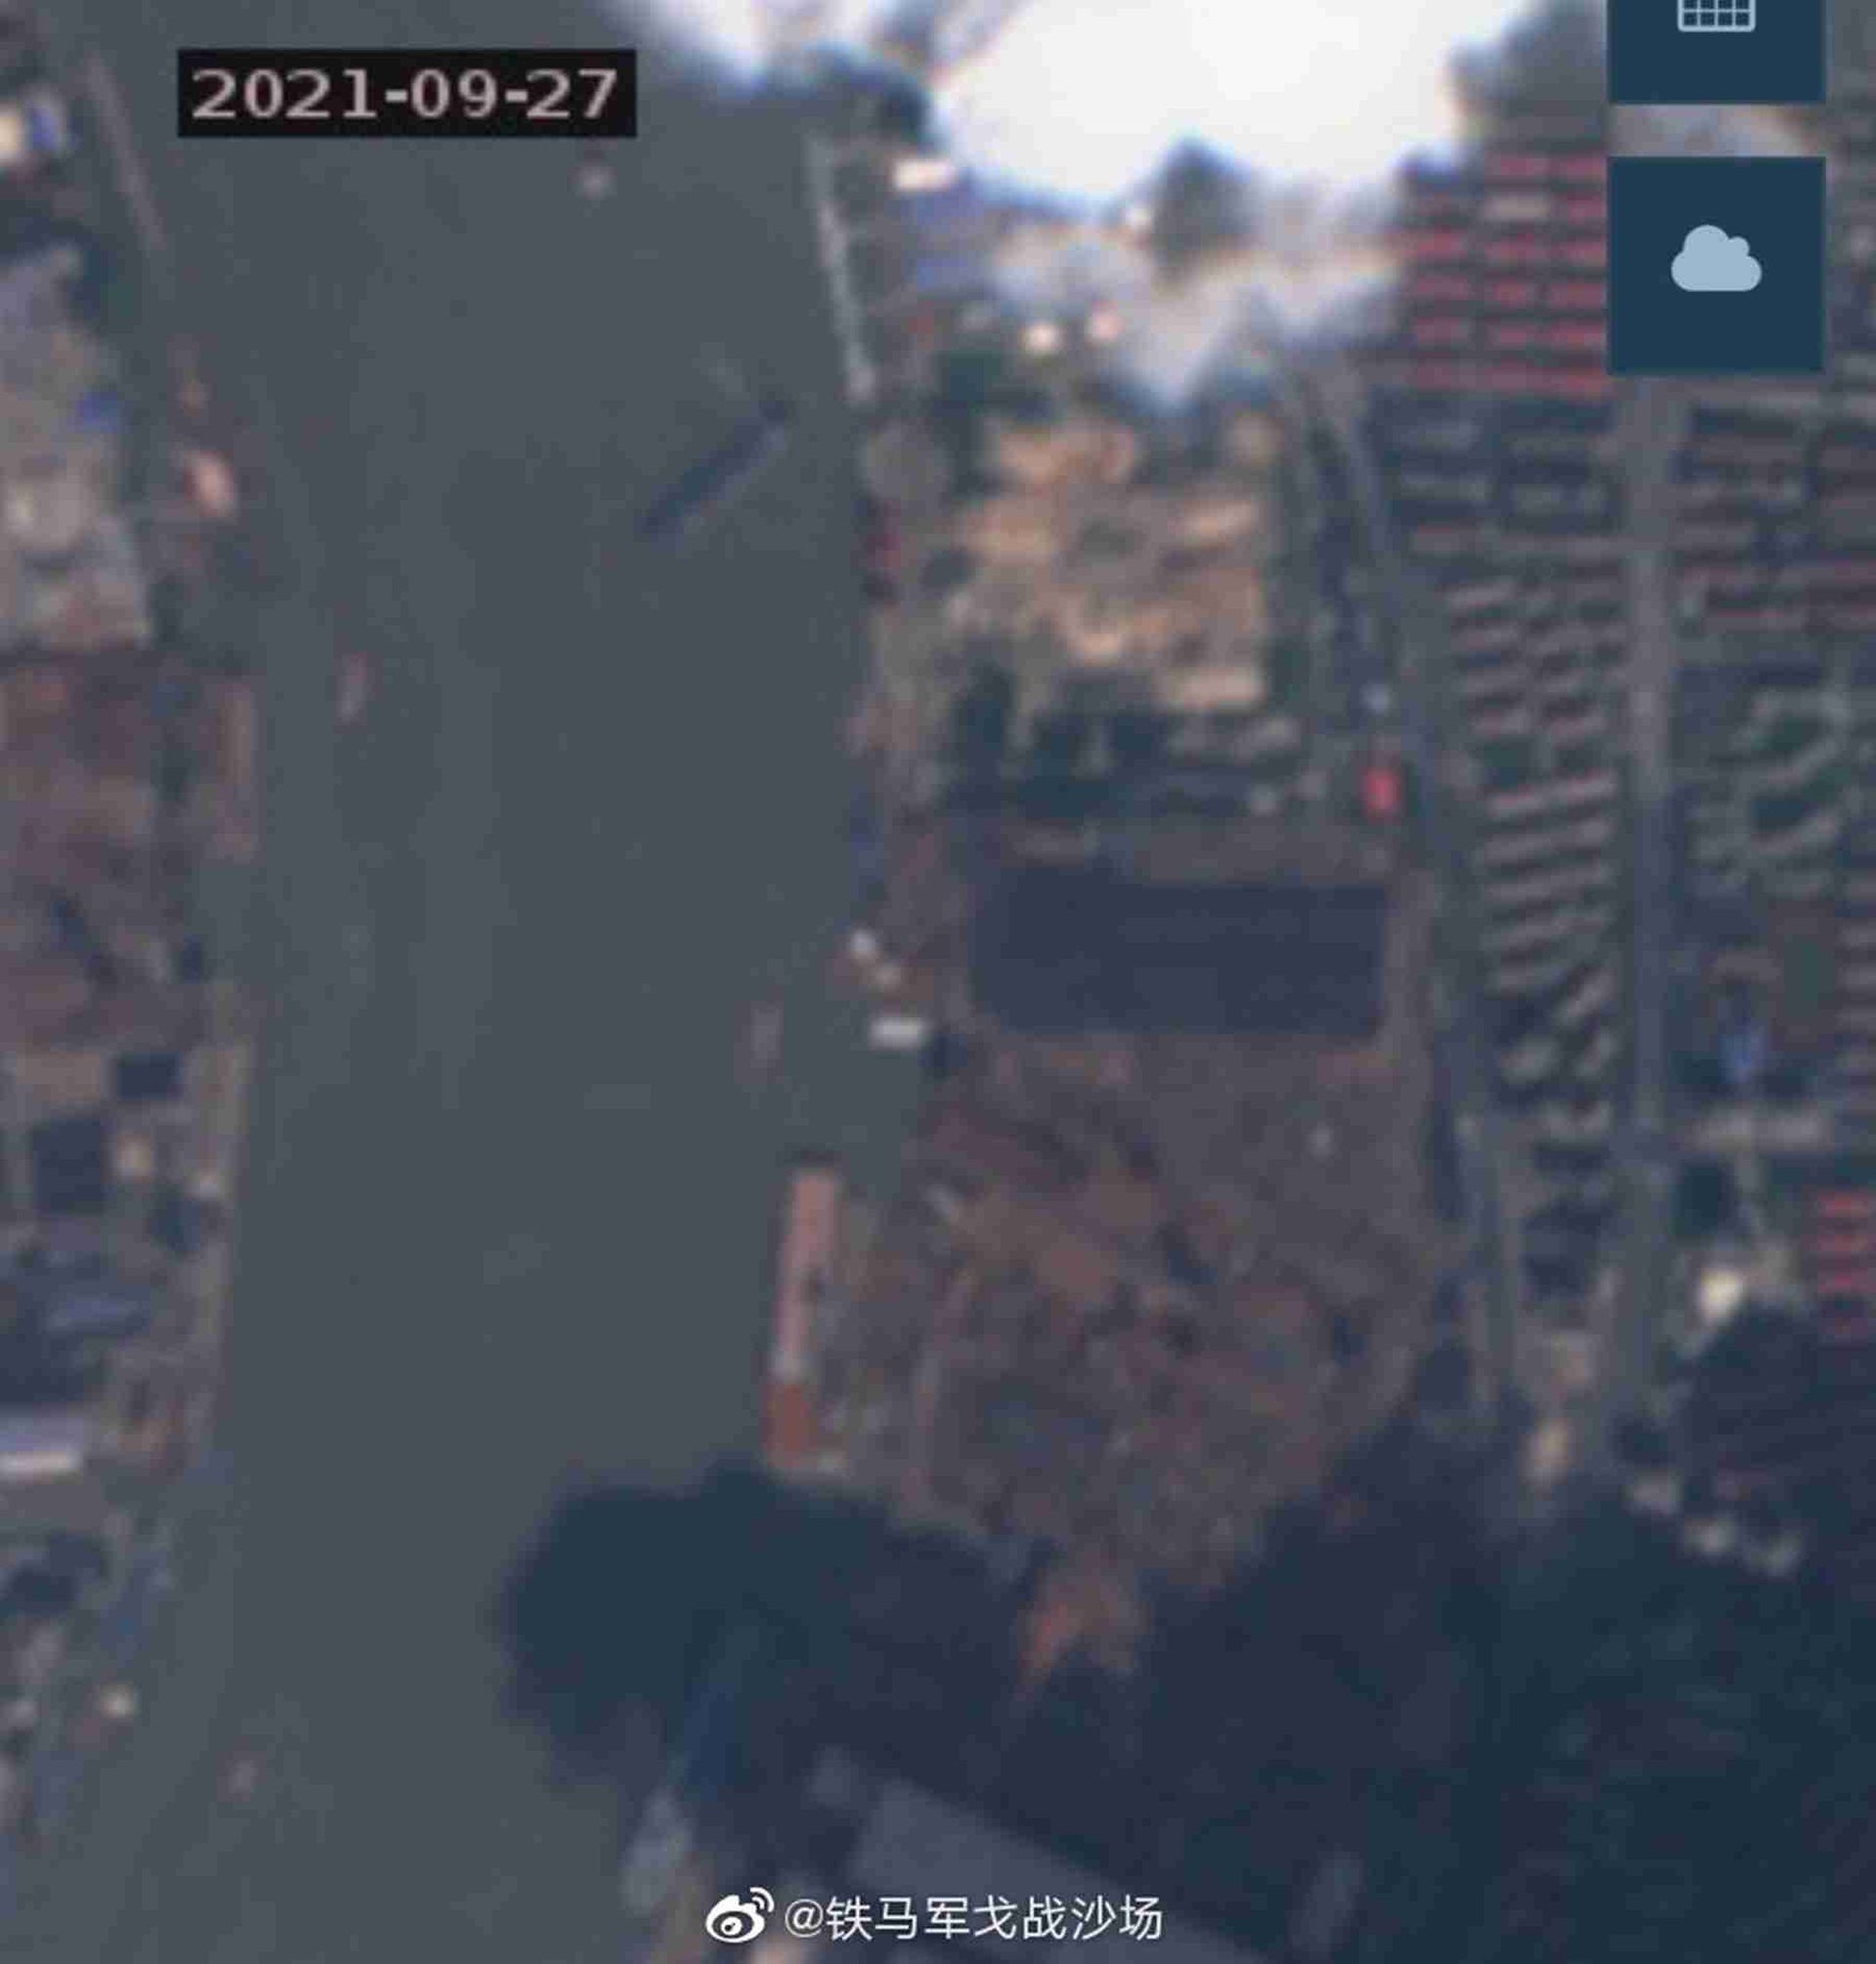 075三号舰最新卫星照。这是拍摄于9月27日的卫星照。（微博@铁马军戈战沙场）